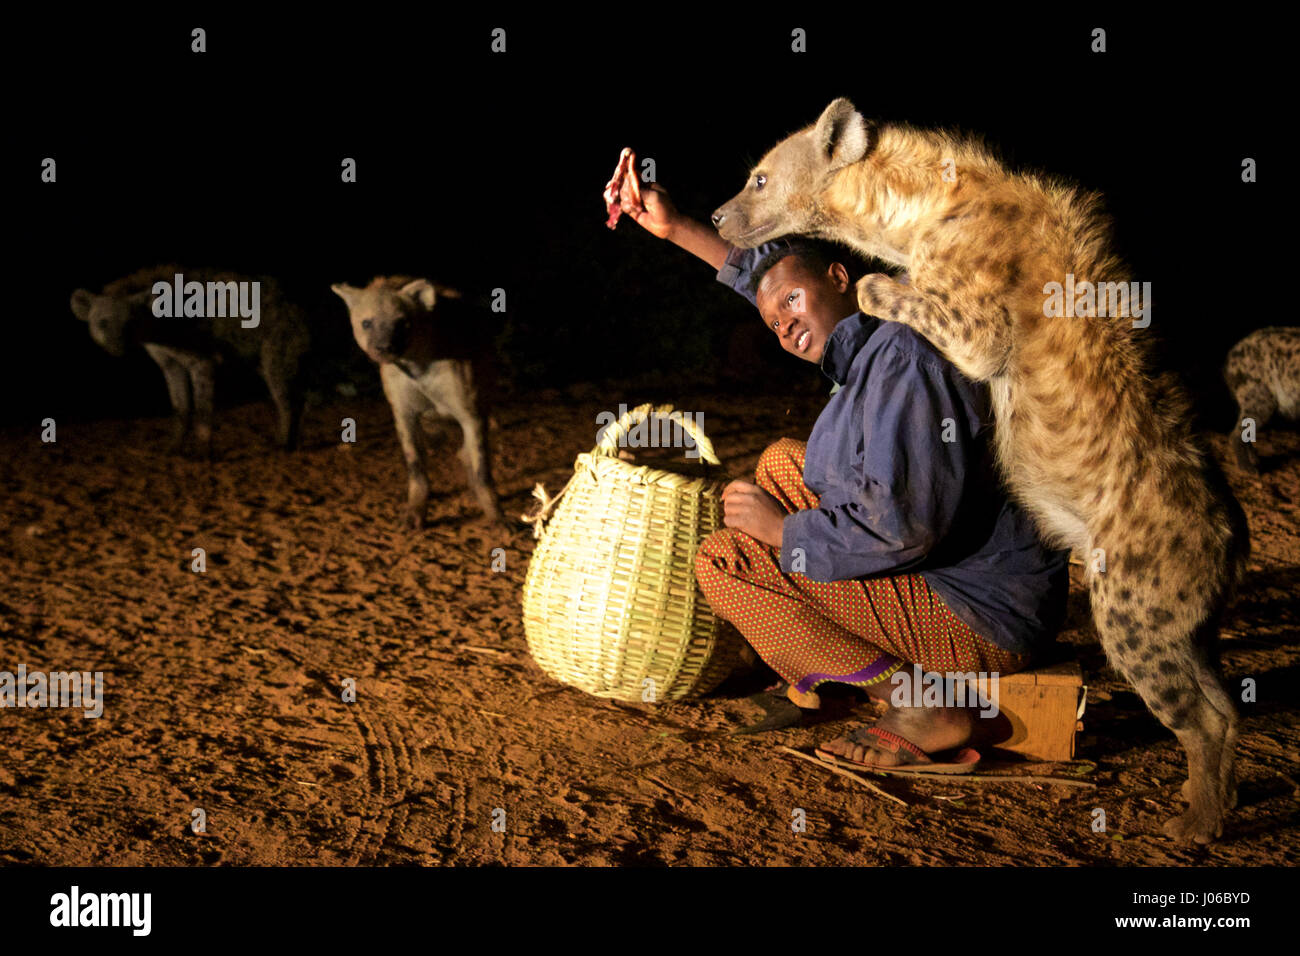 HARAR, Äthiopien: Neue 'Hyäne Man' Abbas Saleh mit einer Hyäne. Treffen Sie die unglaubliche Hyäne Mann von Harar, die nun seinen Titel auf seinen Sohn nach dreißig Jahren, am besten mit Freunden einen Clan dieser fleischfressende Tiere vorbei ist. Bilder zeigen einen jungen Erben die Hyäne Mann Titel nach der jahrhundertealten Tradition seines Volkes vor möglichen Angriffen durch Hyänen ruhig füttern diese wilden Radikalfänger schützen. Er ist völlig frei von jeglicher Art von Angst Sie assoziieren würde, wobei dies in der Nähe Afrikas produktivsten Fleischfresser.  Hyänen sind dafür bekannt, angreifen und töten Menschen, sondern als diese r Stockfoto